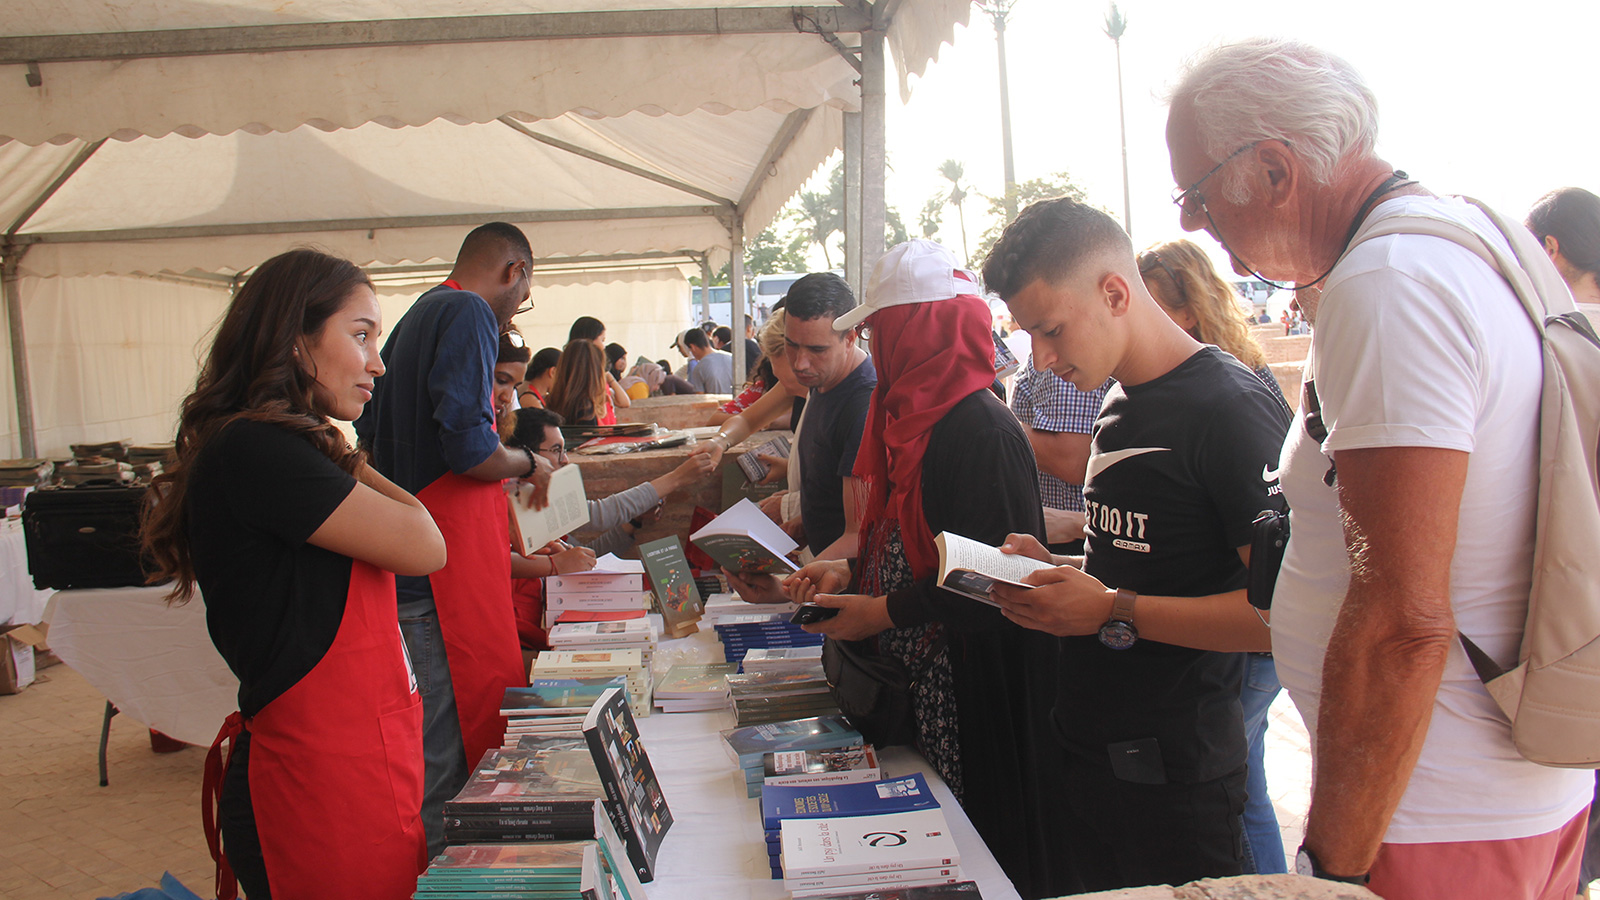 المعرض يتيح للزوار لقاء الكُتاب ومناقشتهم في كتبهم (الجزيرة)